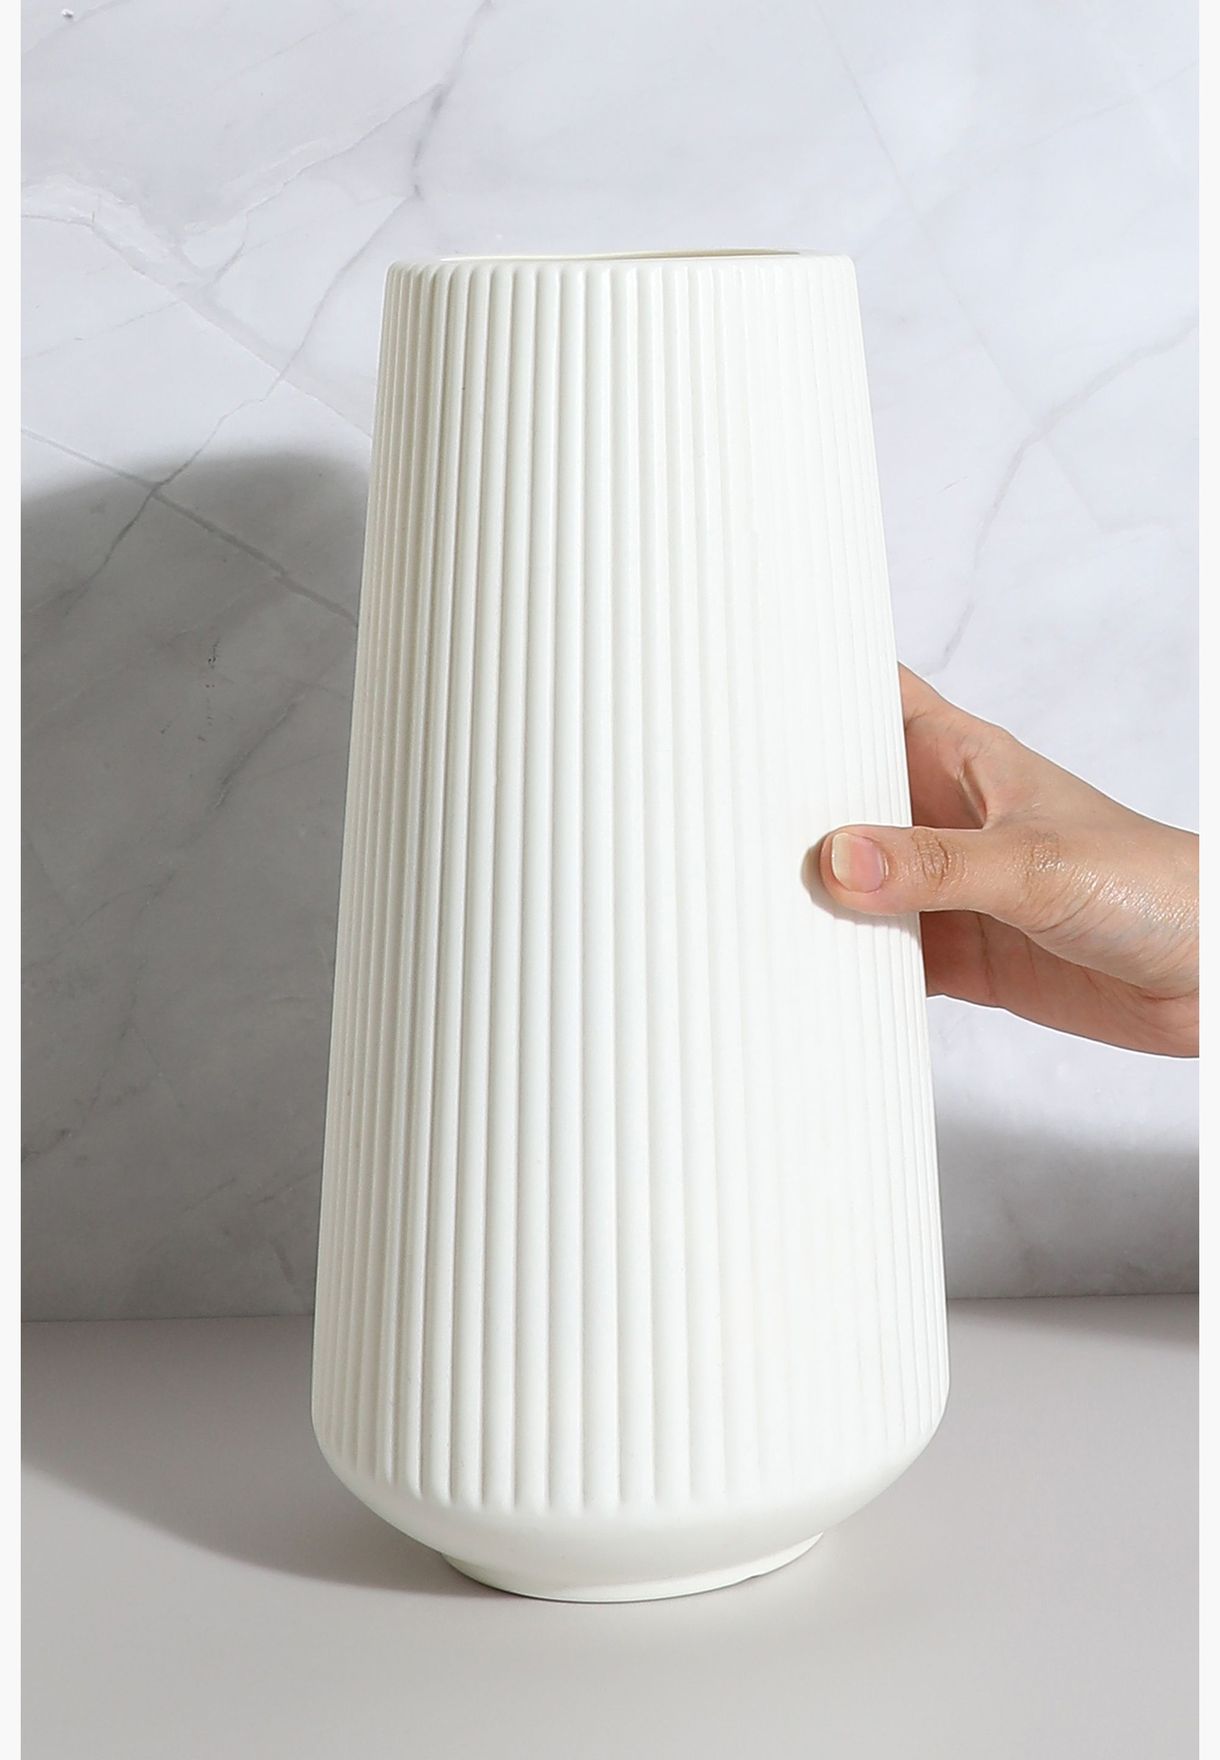 Striped Tall Round Modern Ceramic Flower Vase For Home Decor 